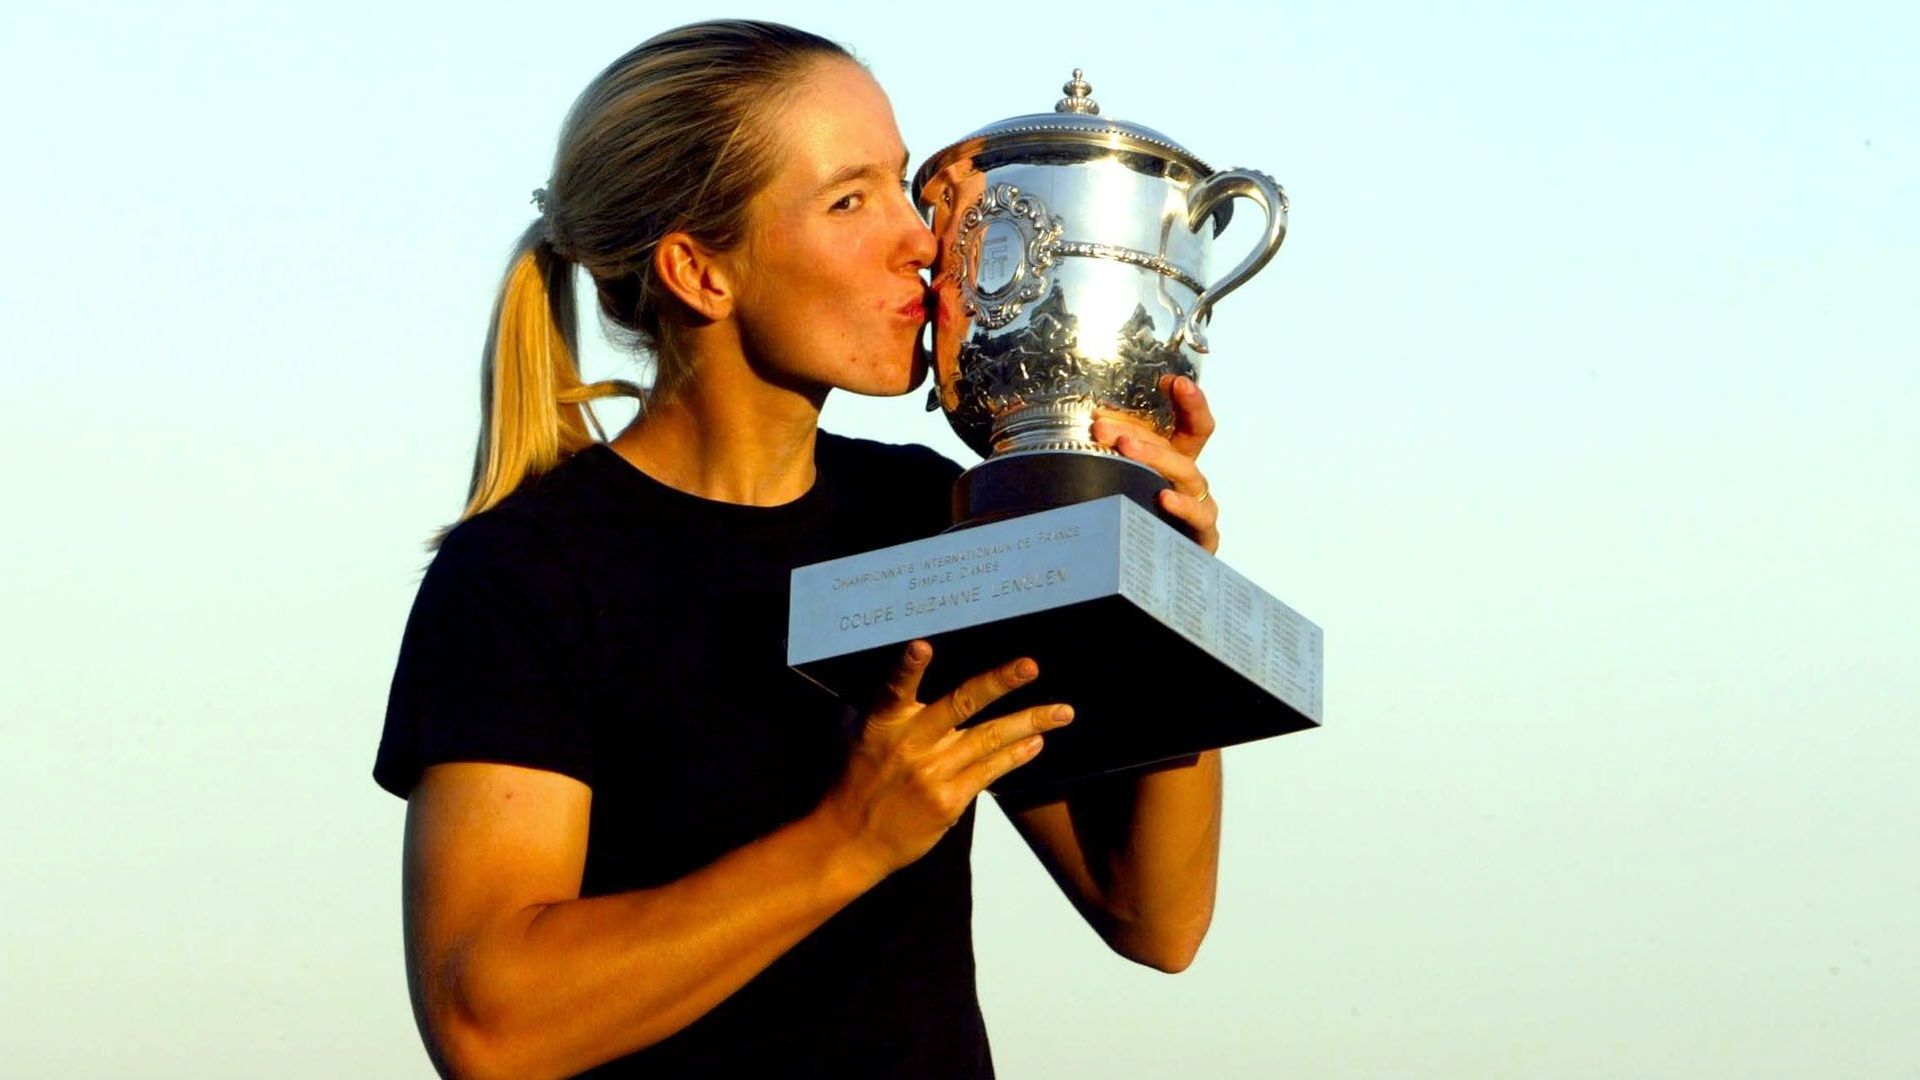 Roland-Garros 2003, le premier Grand Chelem de Justine Henin